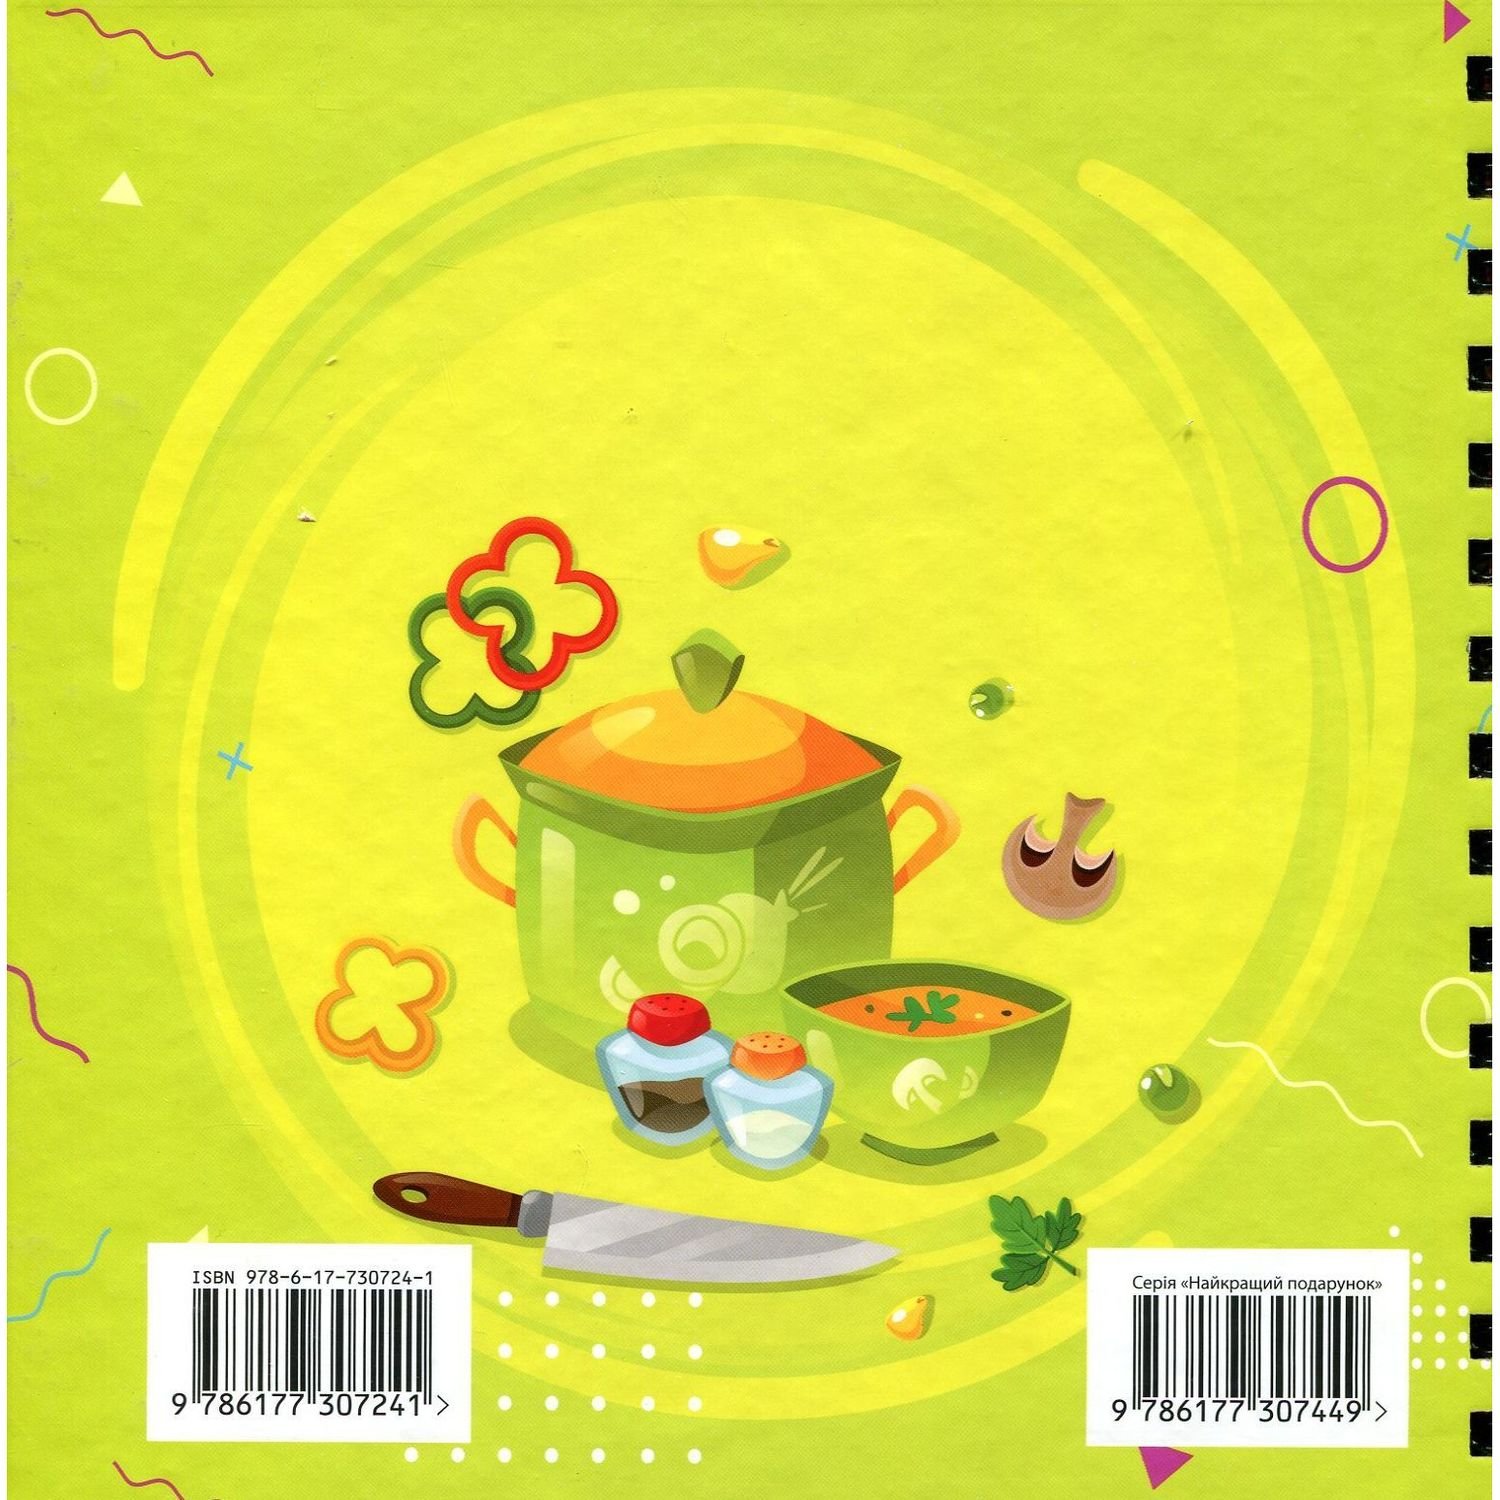 Детские книги Талант Найкращий подарунок Kids menu Книга для запису кулінарних рецептів - Джавахідзе Н. Н.(9726177307241) - фото 2